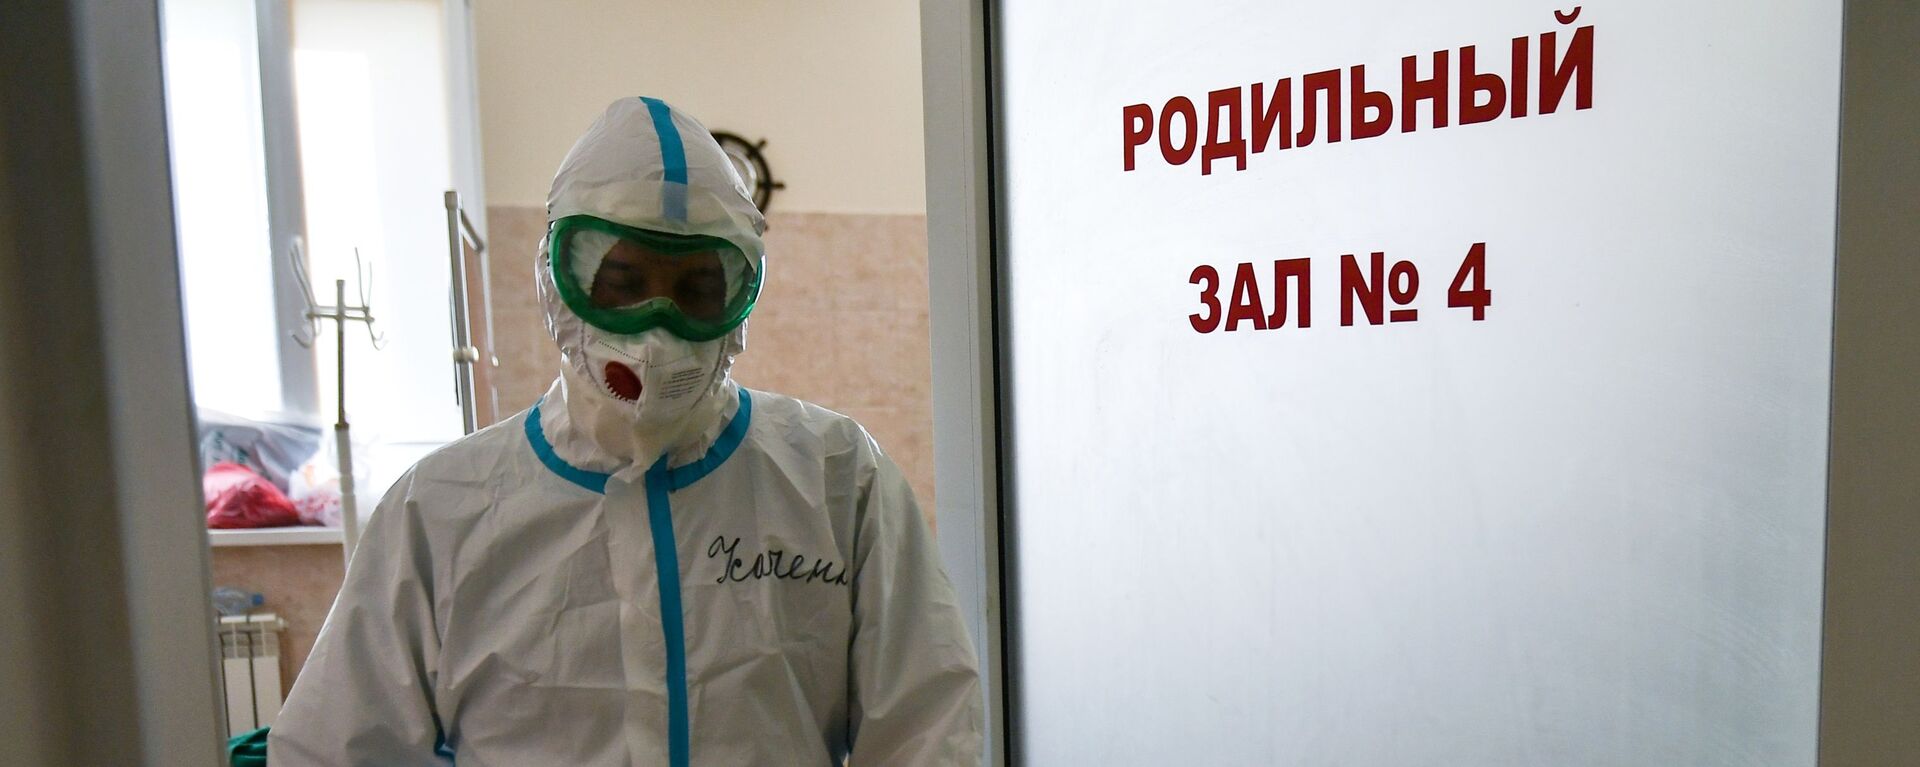 Медицинский сотрудник выходит из палаты для больных коронавирусом в родильном доме - Sputnik Беларусь, 1920, 08.02.2021